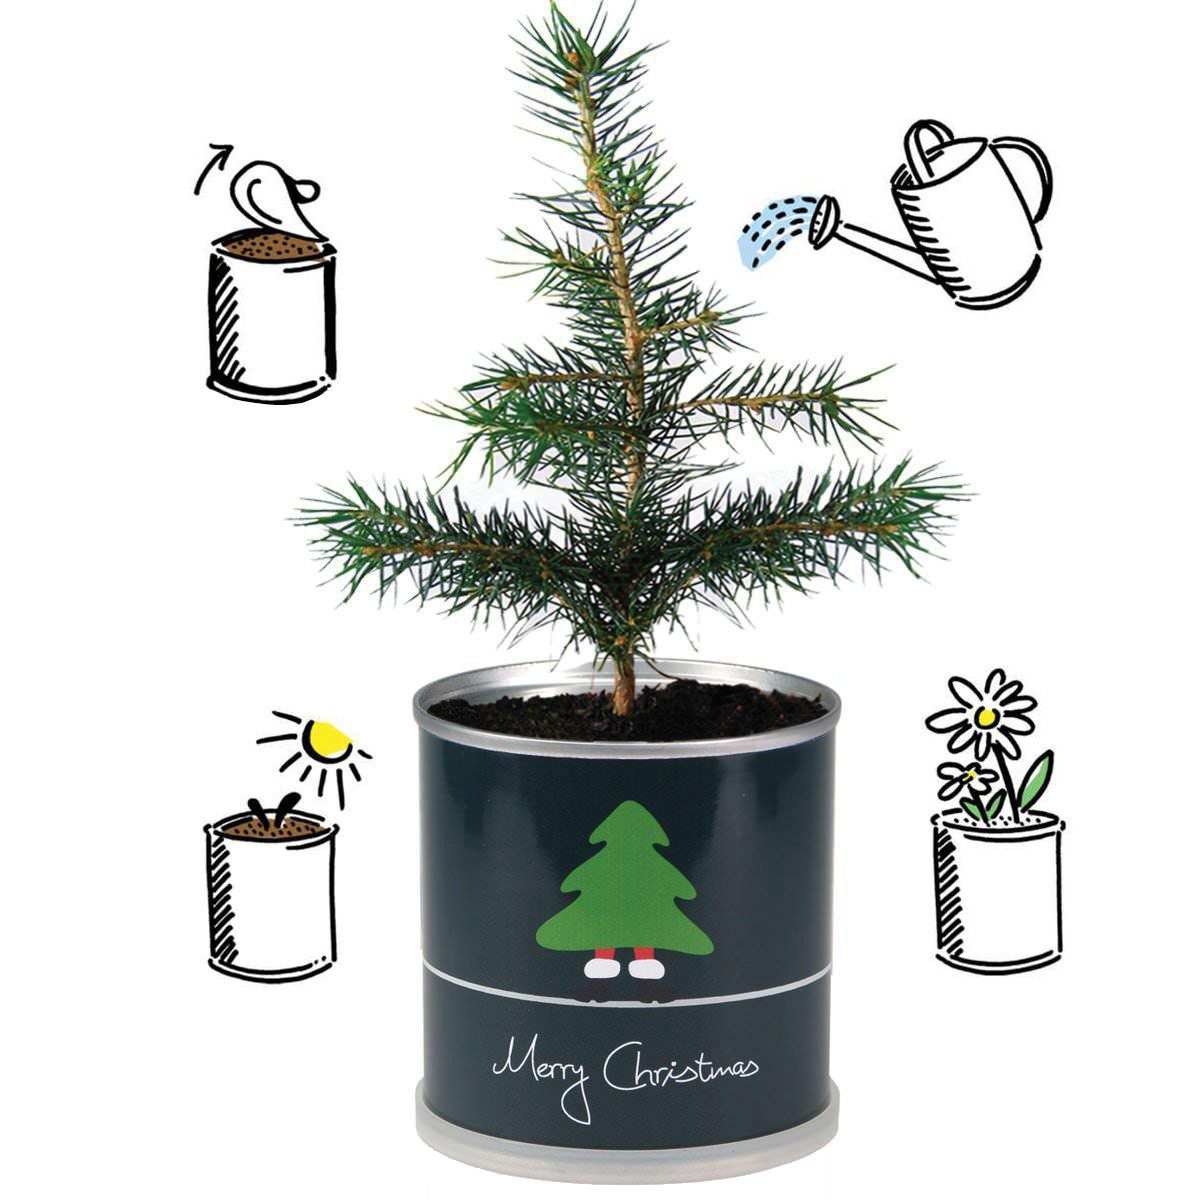 MacFlowers® Christbaumschmuck Weihnachtsbaum Grün in - (1-tlg) der Dose Christmas Merry